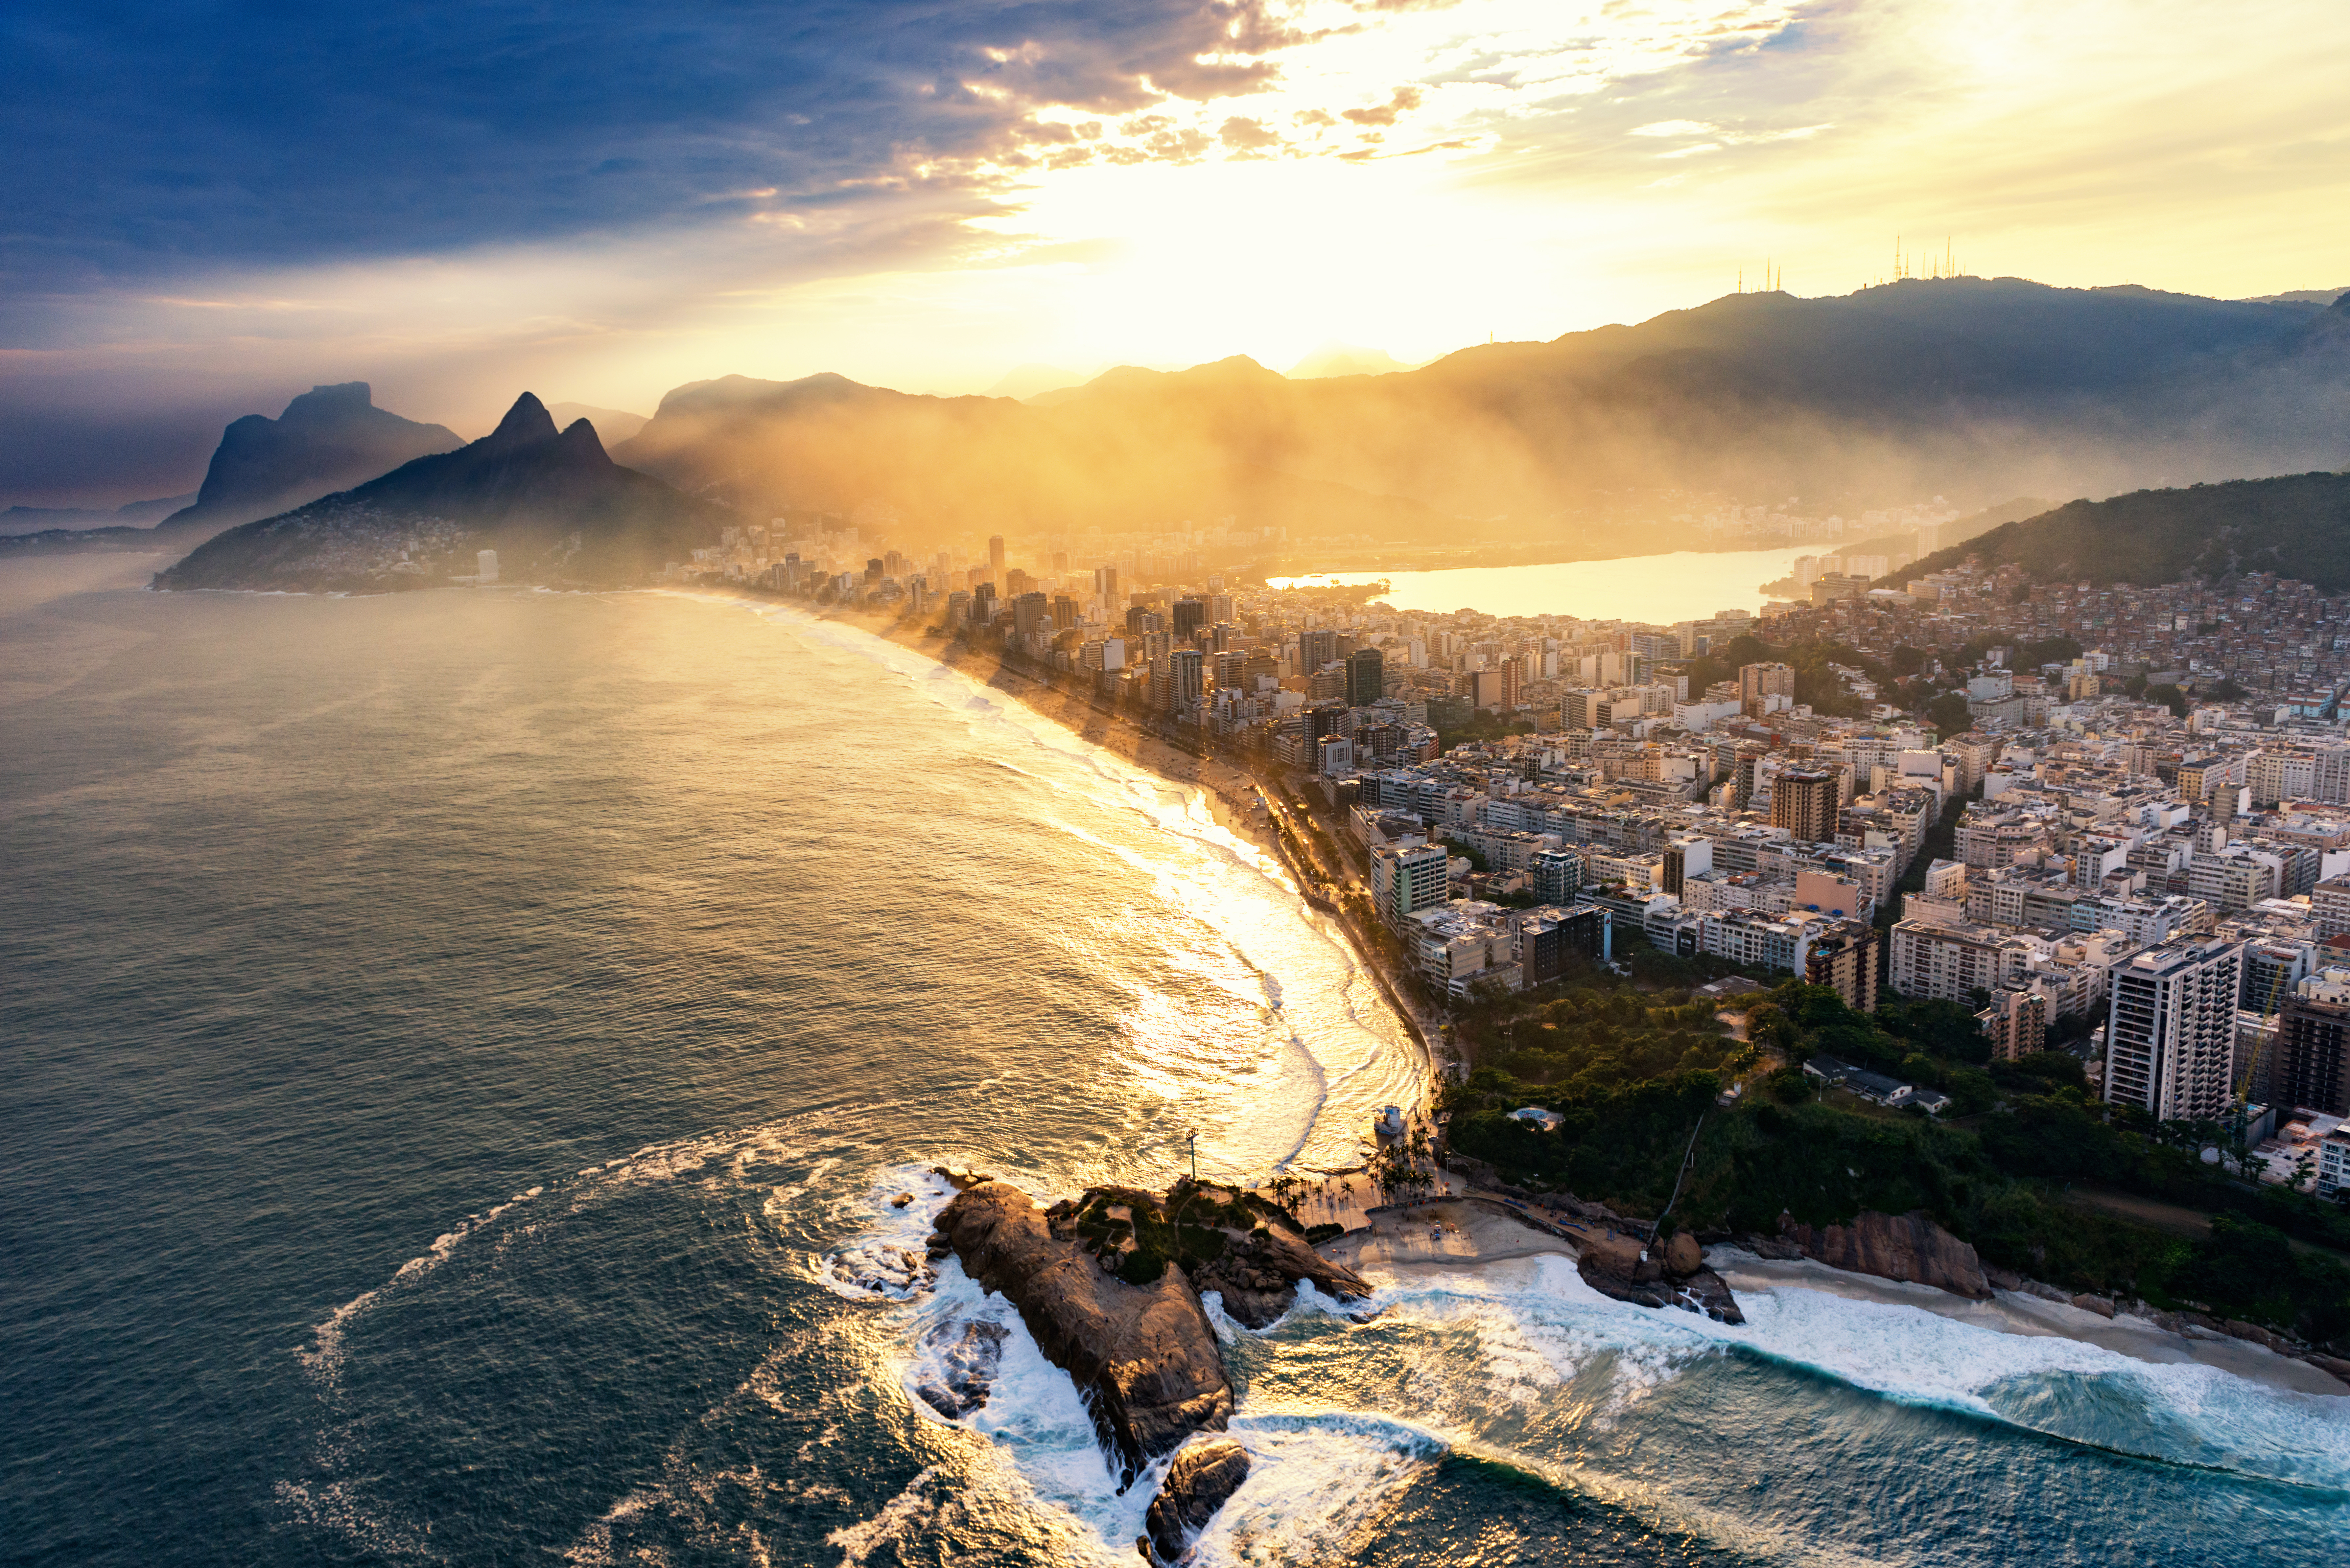 Man Made Rio De Janeiro 7150x4772